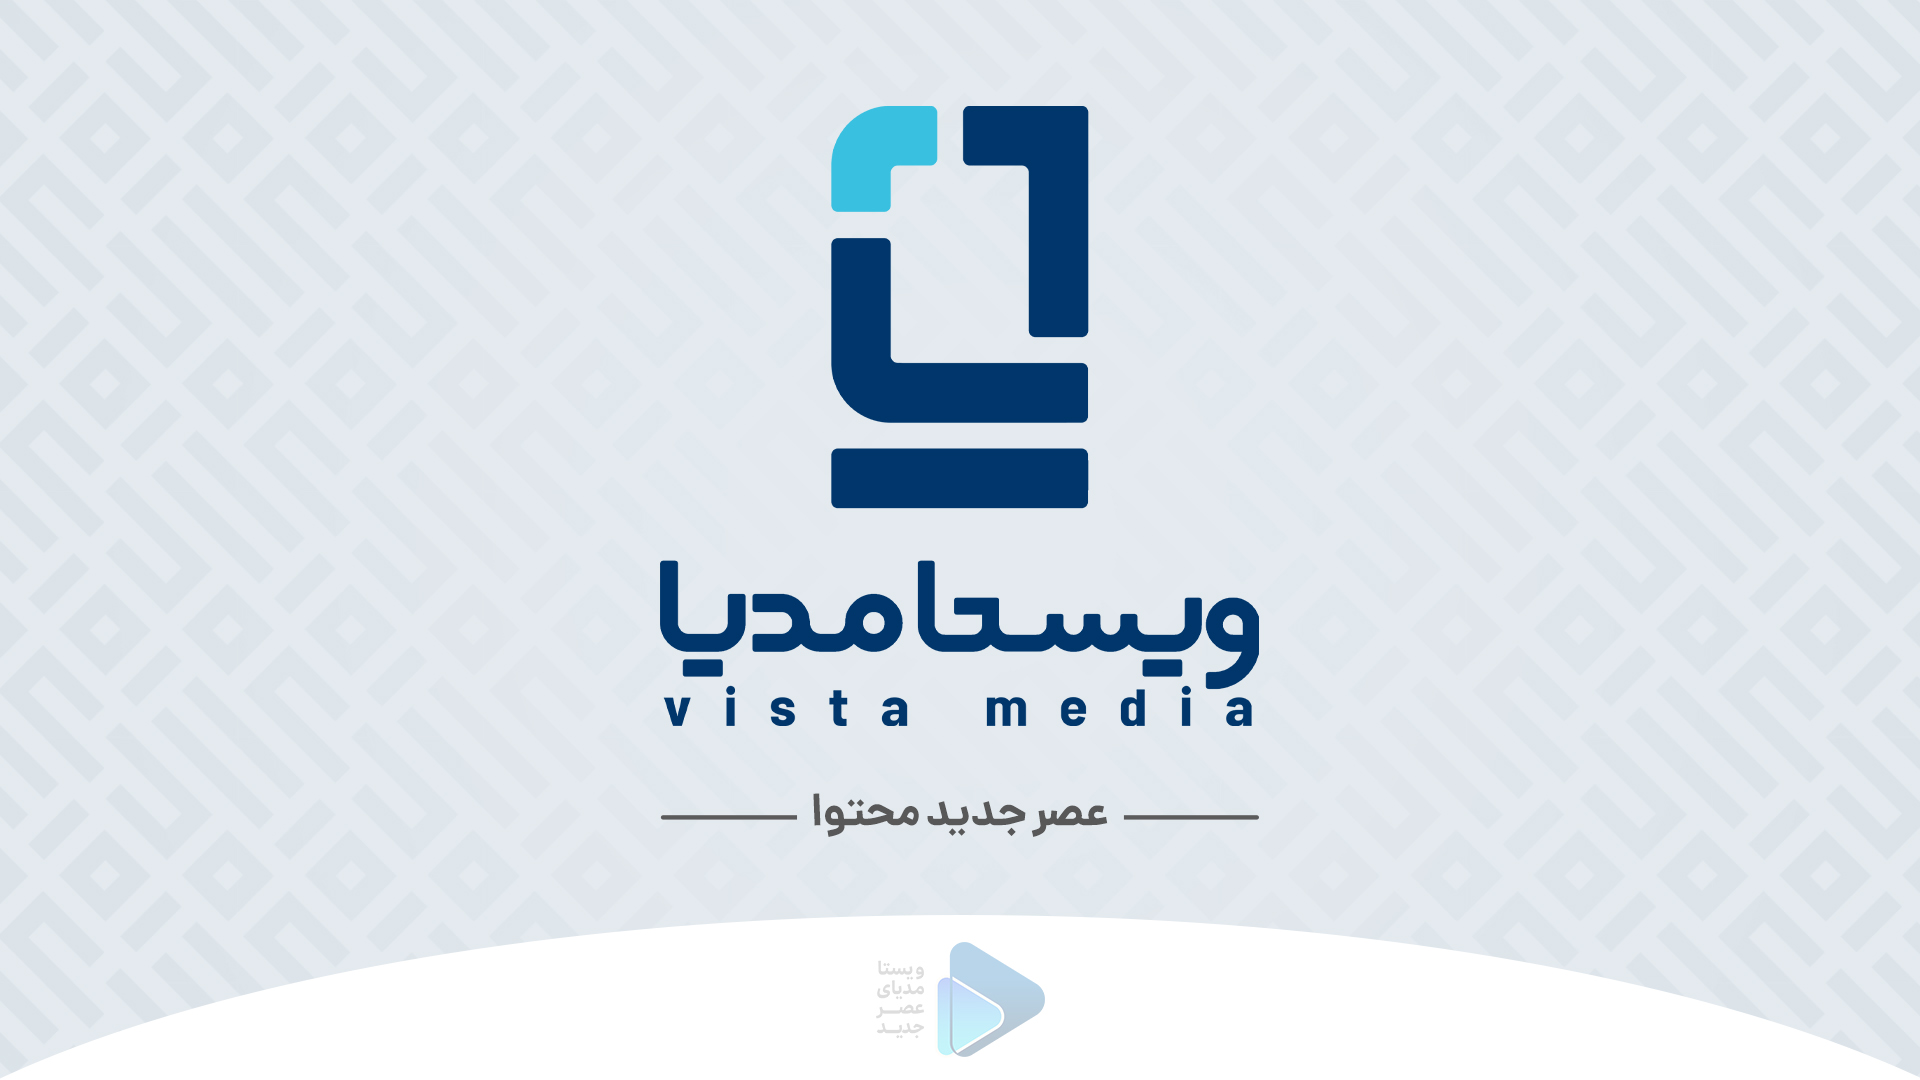 لوگوی جدید خانه تولید محتوا ویستا مدیا پس از دو سال فعالیت بازطراحی شد